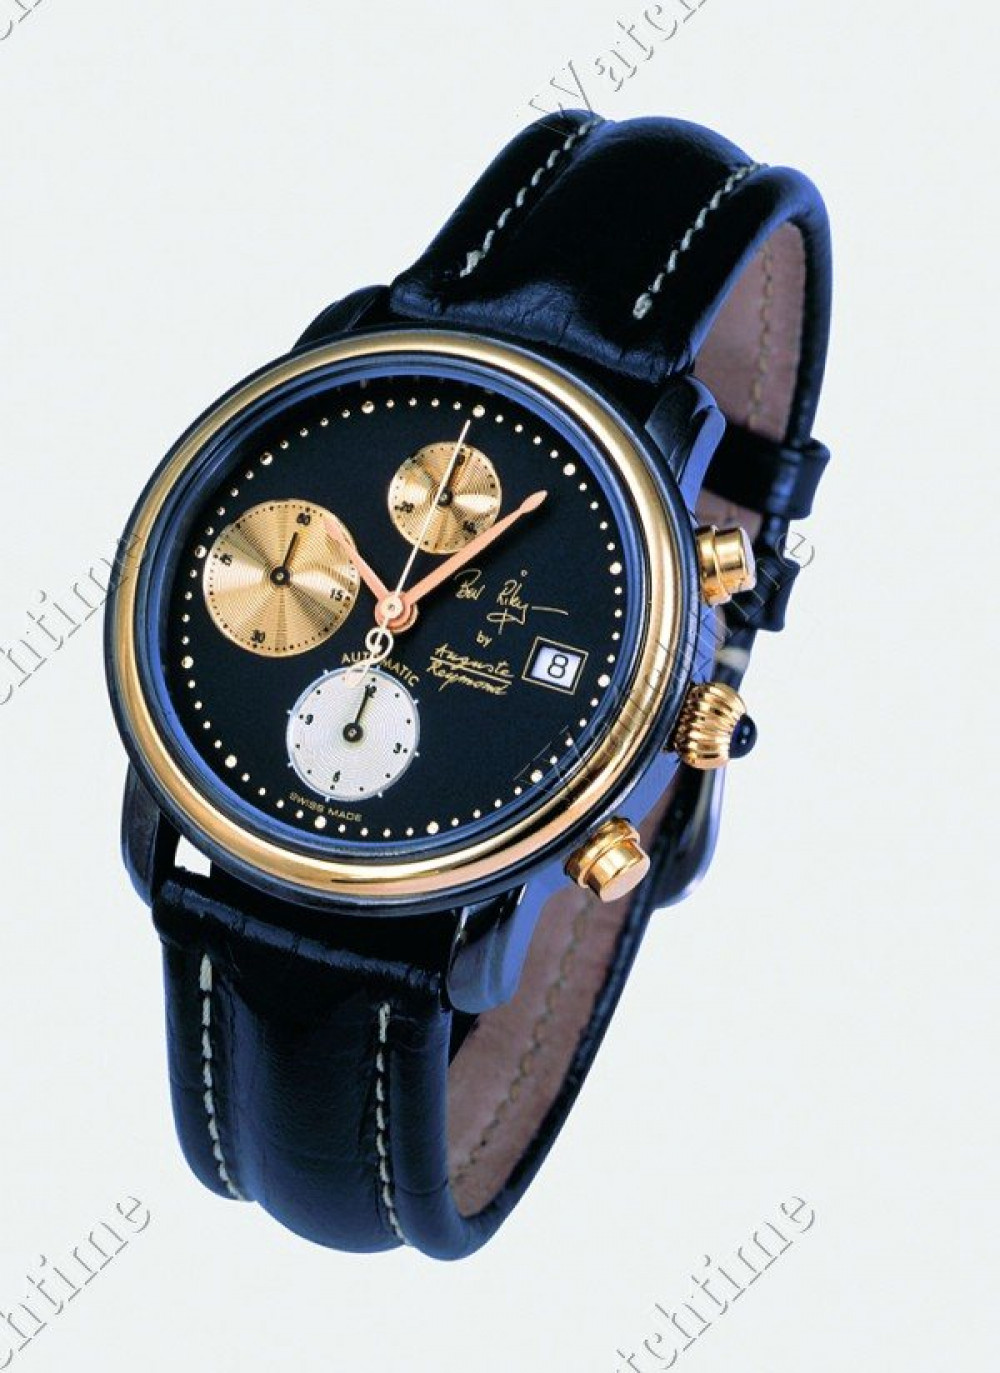 Zegarek firmy Auguste Reymond, model Ben Riley